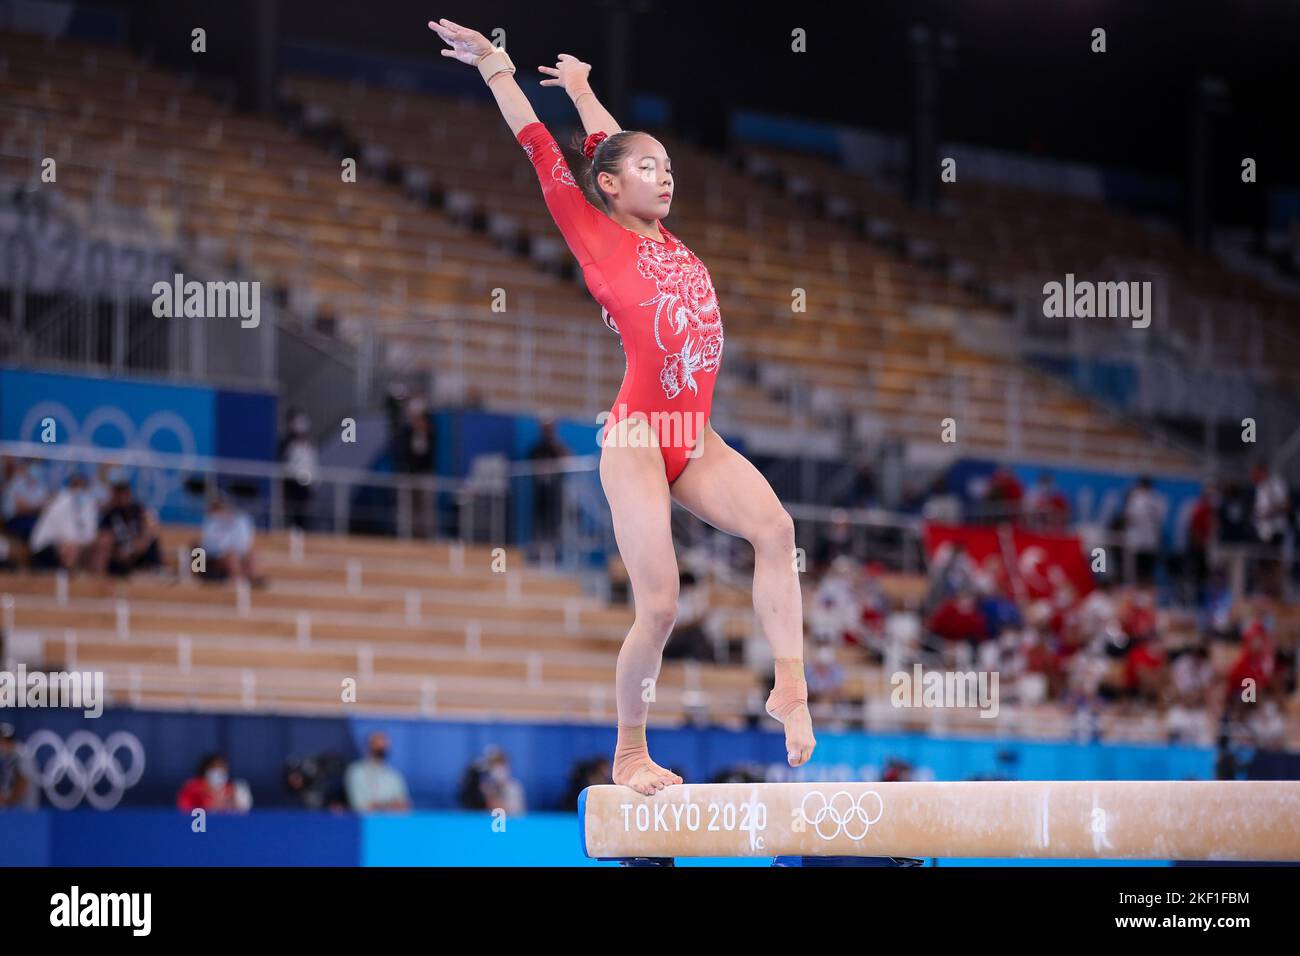 03rd AGOSTO 2021 - TOKYO, GIAPPONE: IL TANG Xijing della Cina suona al fascio di equilibrio femminile durante le finali degli apparati di ginnastica artistica ai Giochi Olimpici di Tokyo 2020 (Foto di Mickael Chavet/RX) Foto Stock